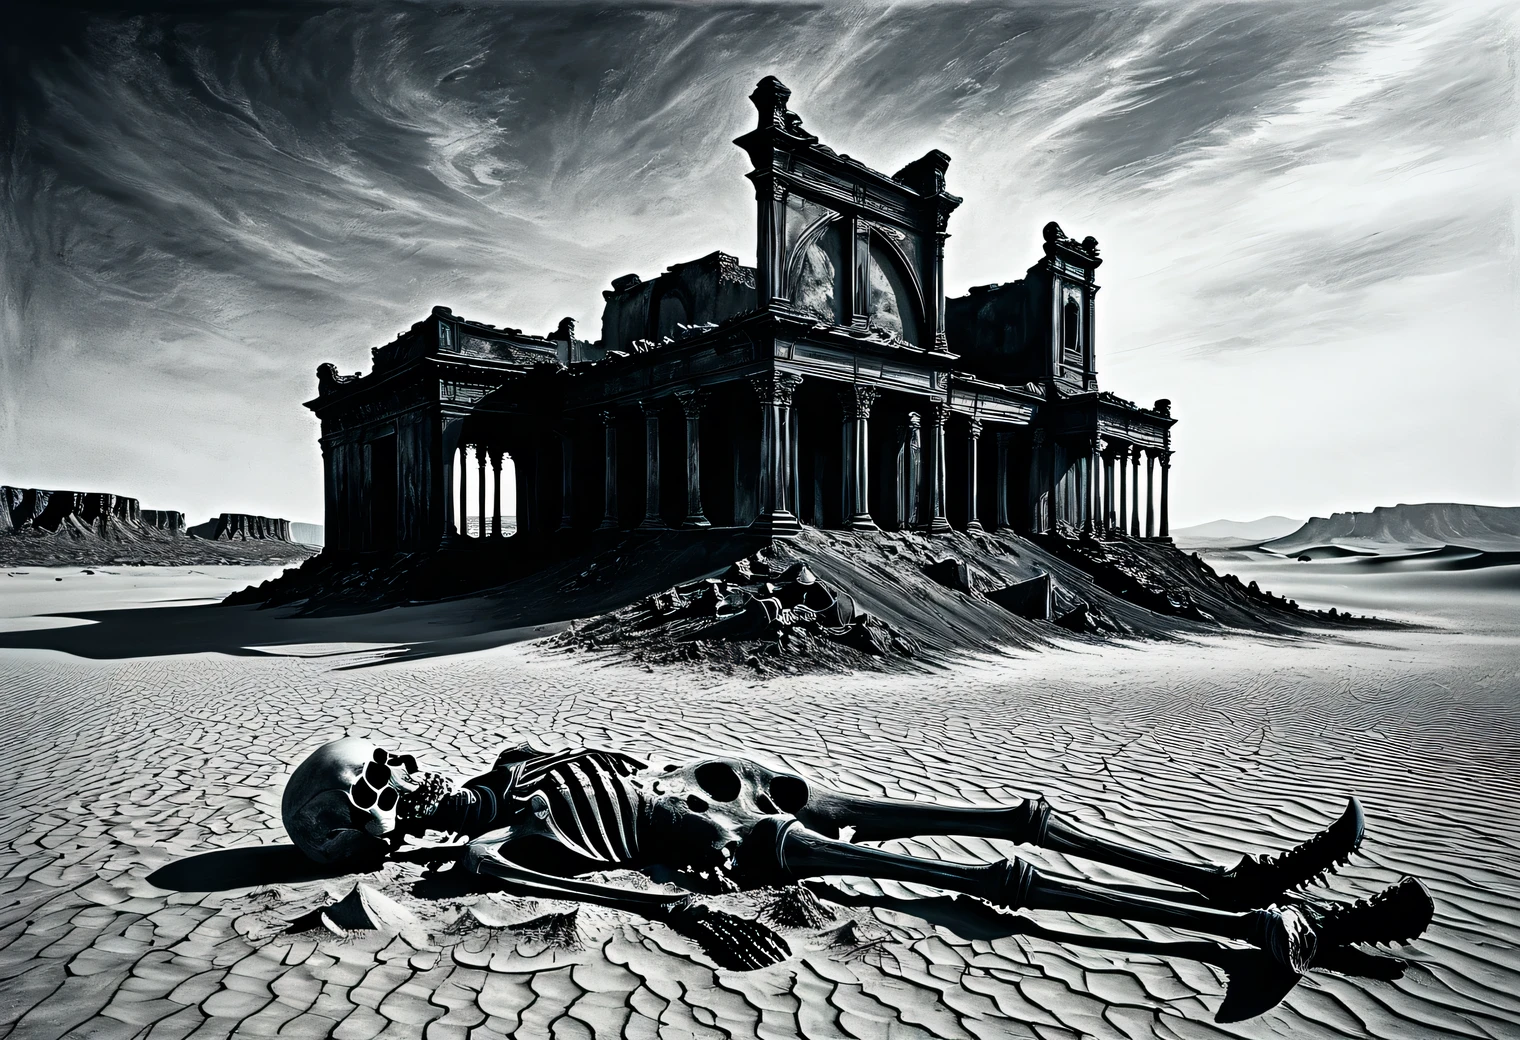 沙漠, 沙, 废墟, 骨头, 干燥, 海市蜃楼, 热, 死亡, 古代, 神秘, 极简主义, 木炭, 明晰, 现代艺术, 详细